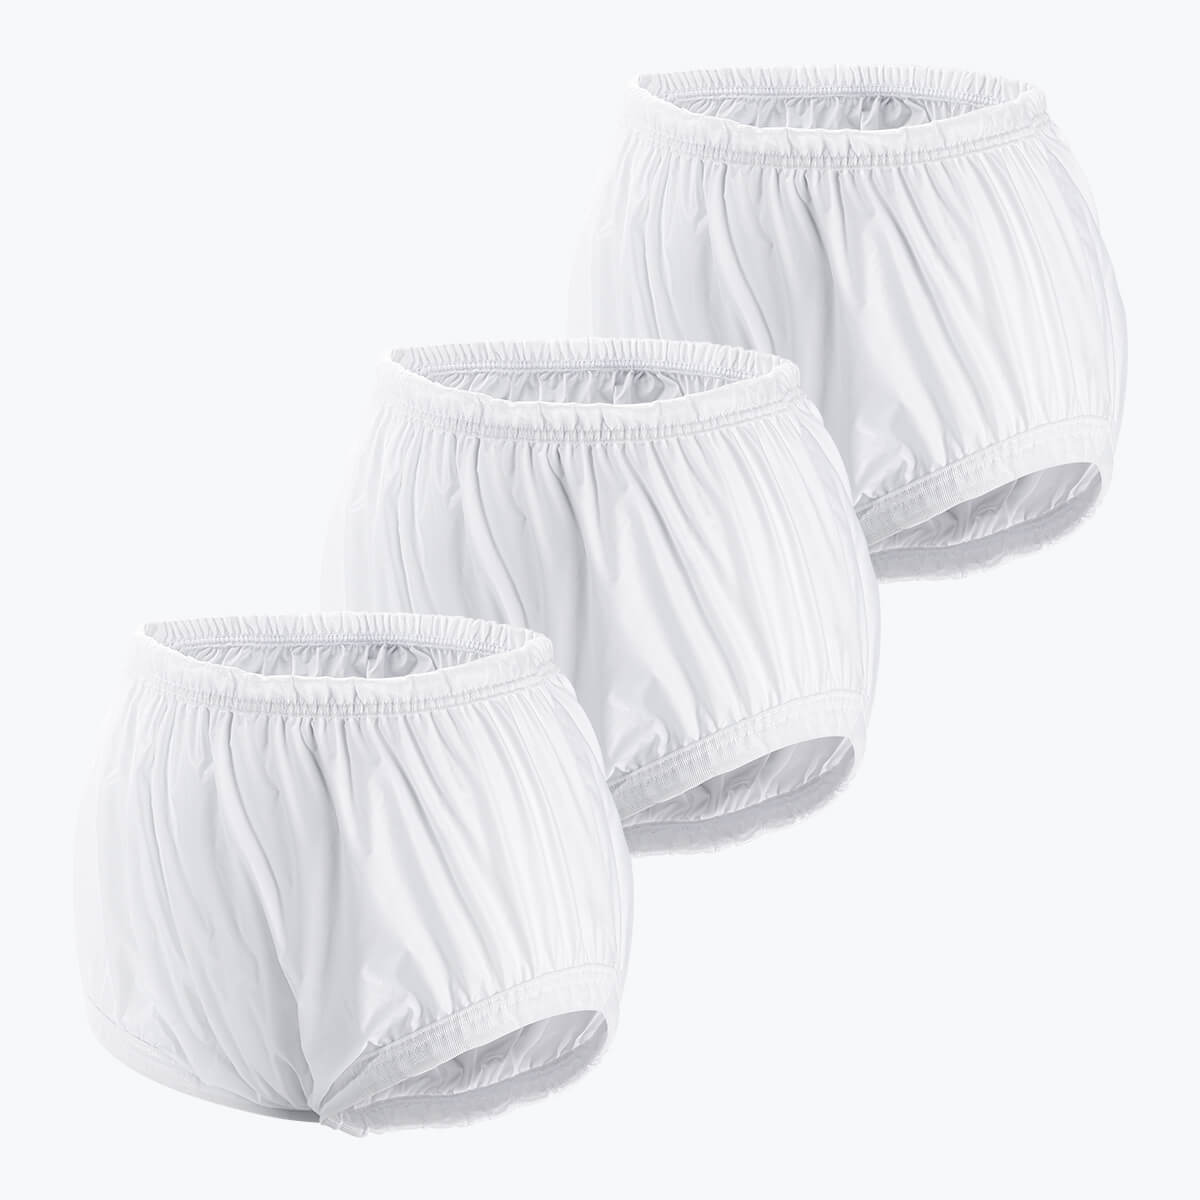 Adult Diaper Wrap - White